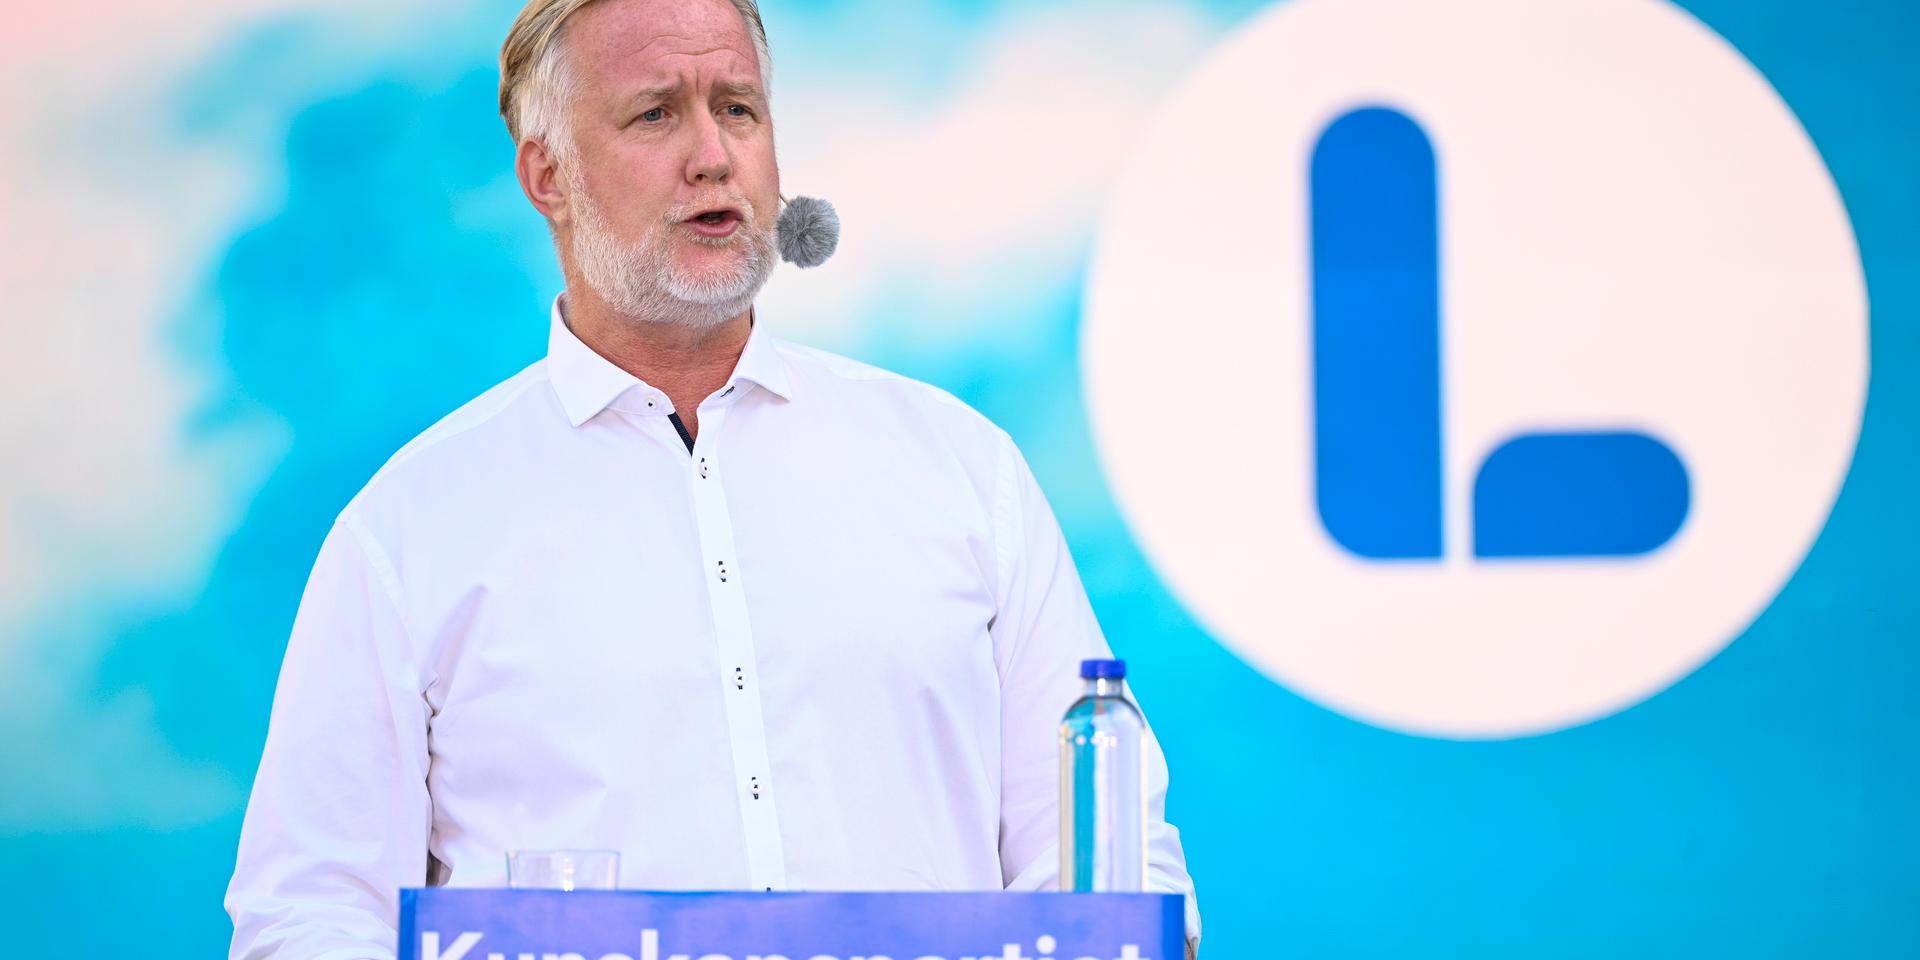 Liberalernas partiledare Johan Pehrson talade under Almedalsveckan i Visby.